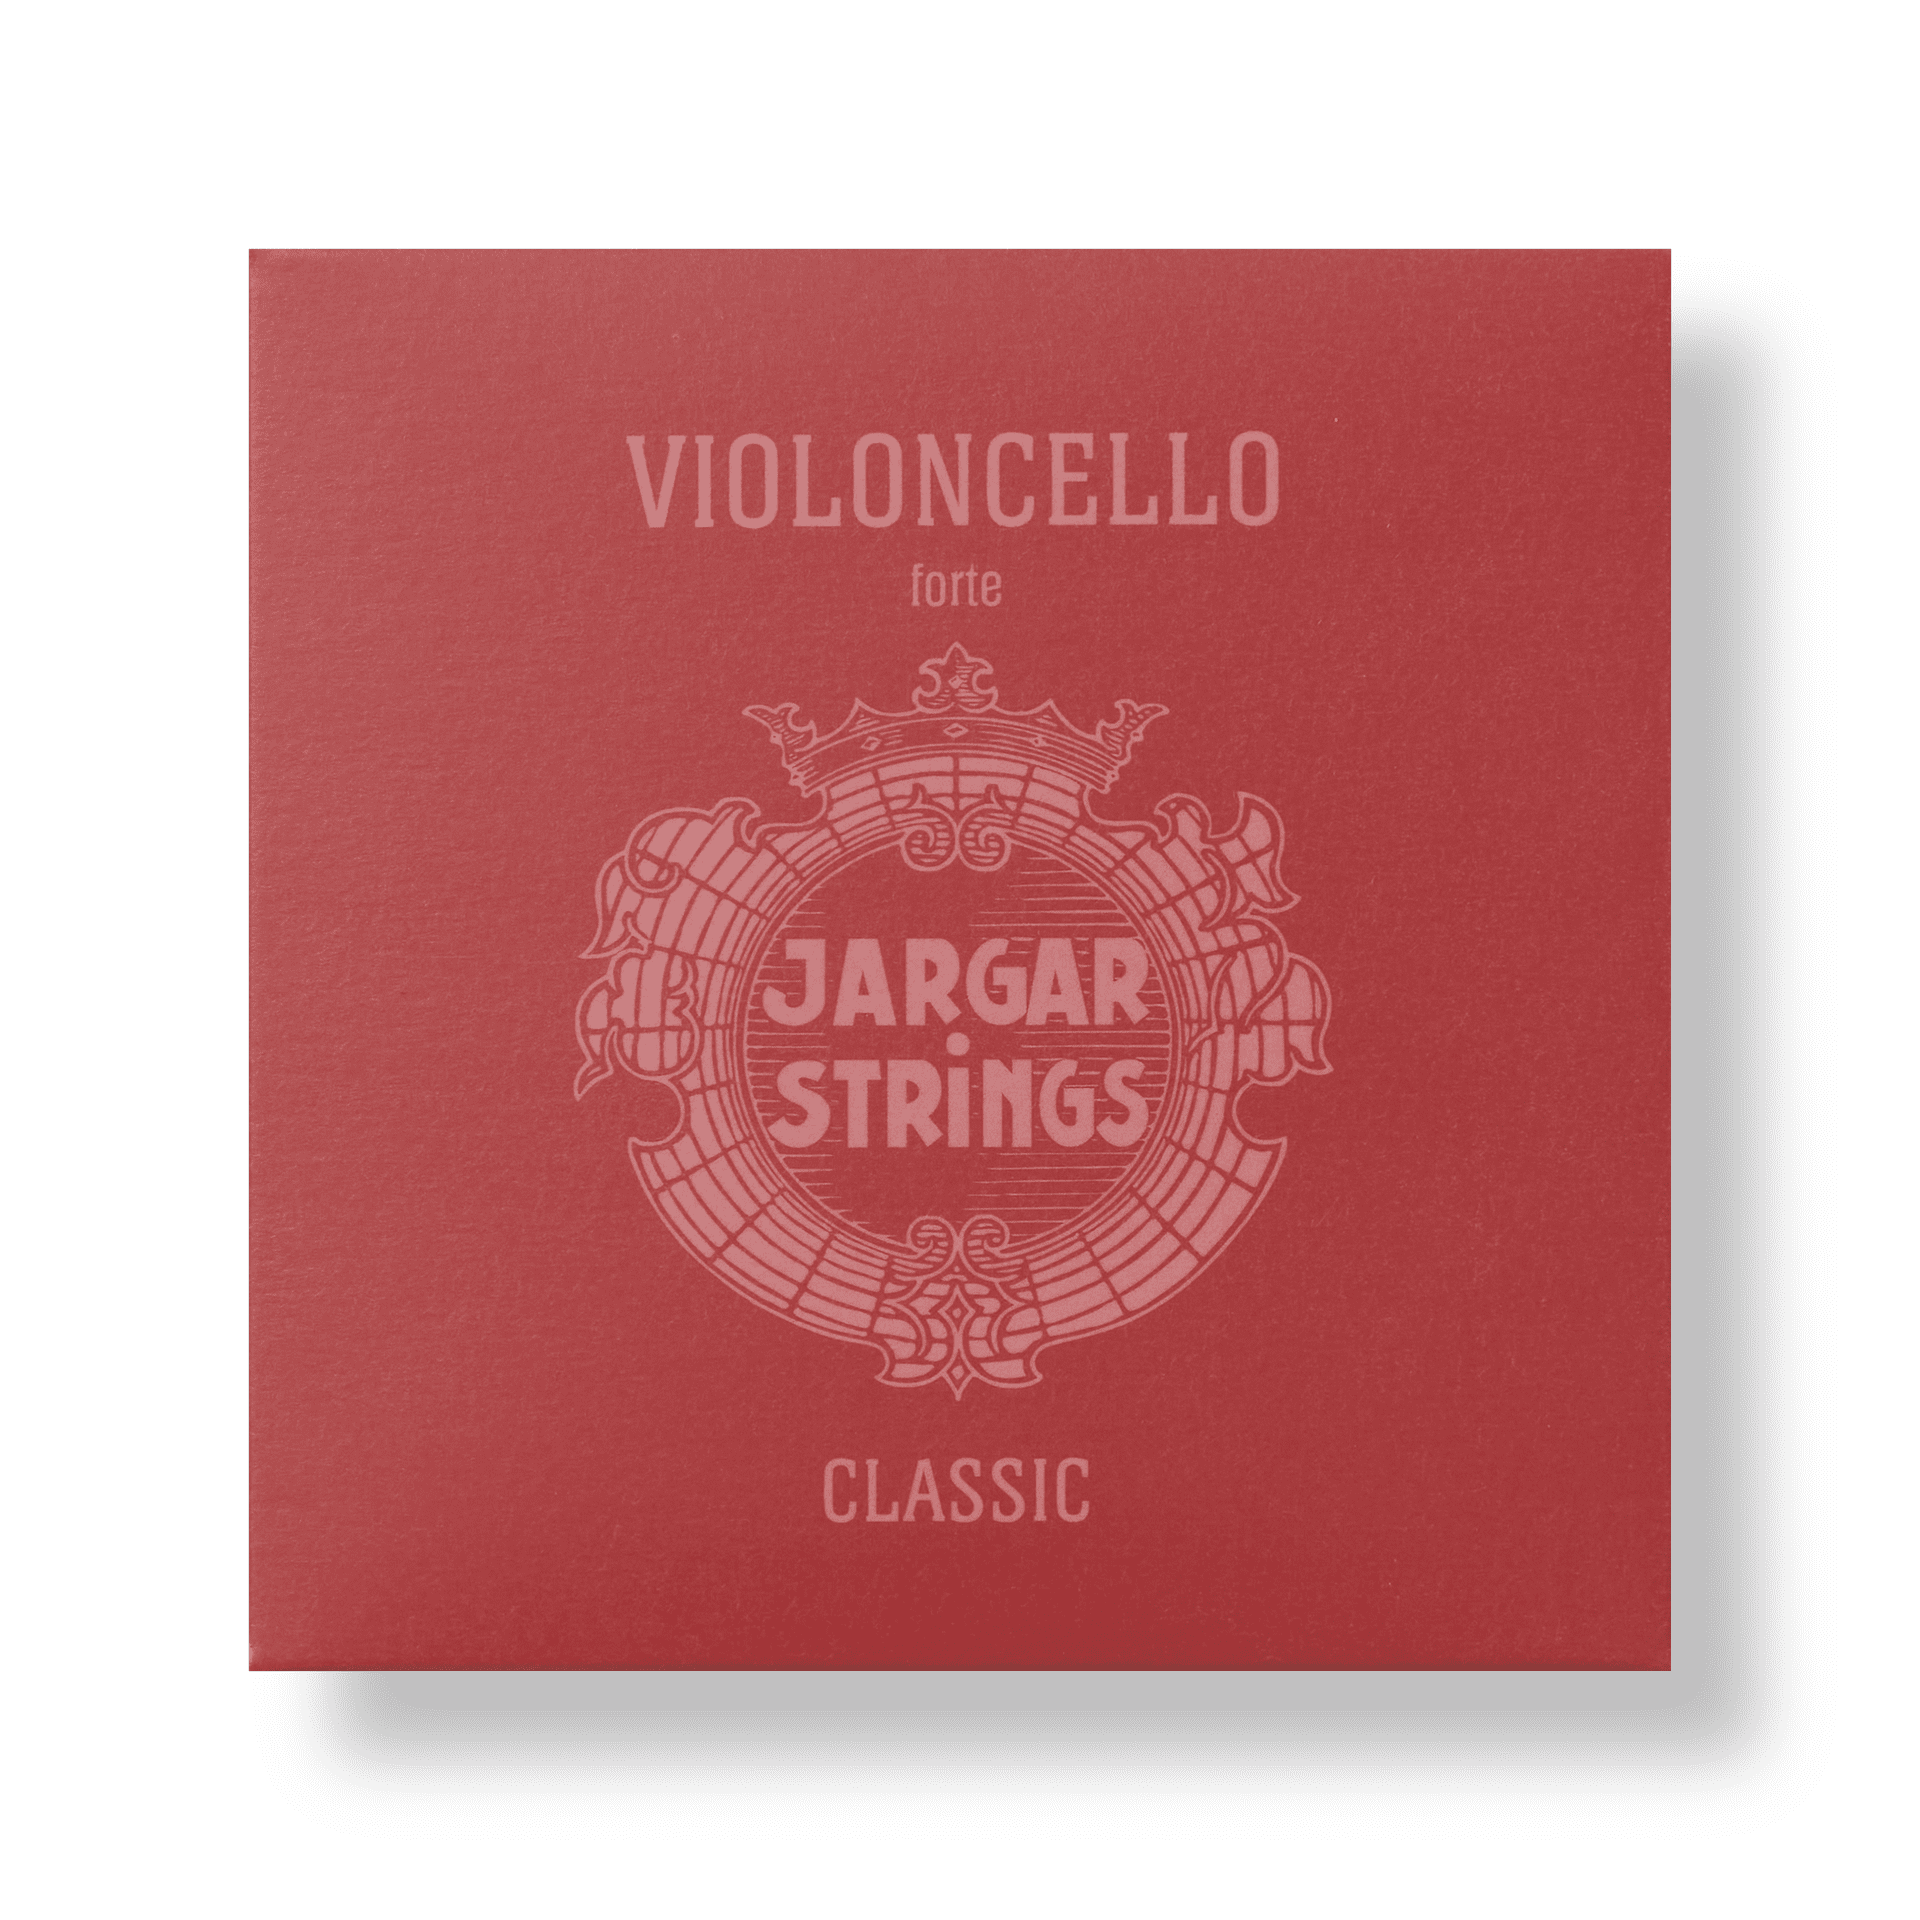 Classic Violoncello - Forte, Set, 4/4